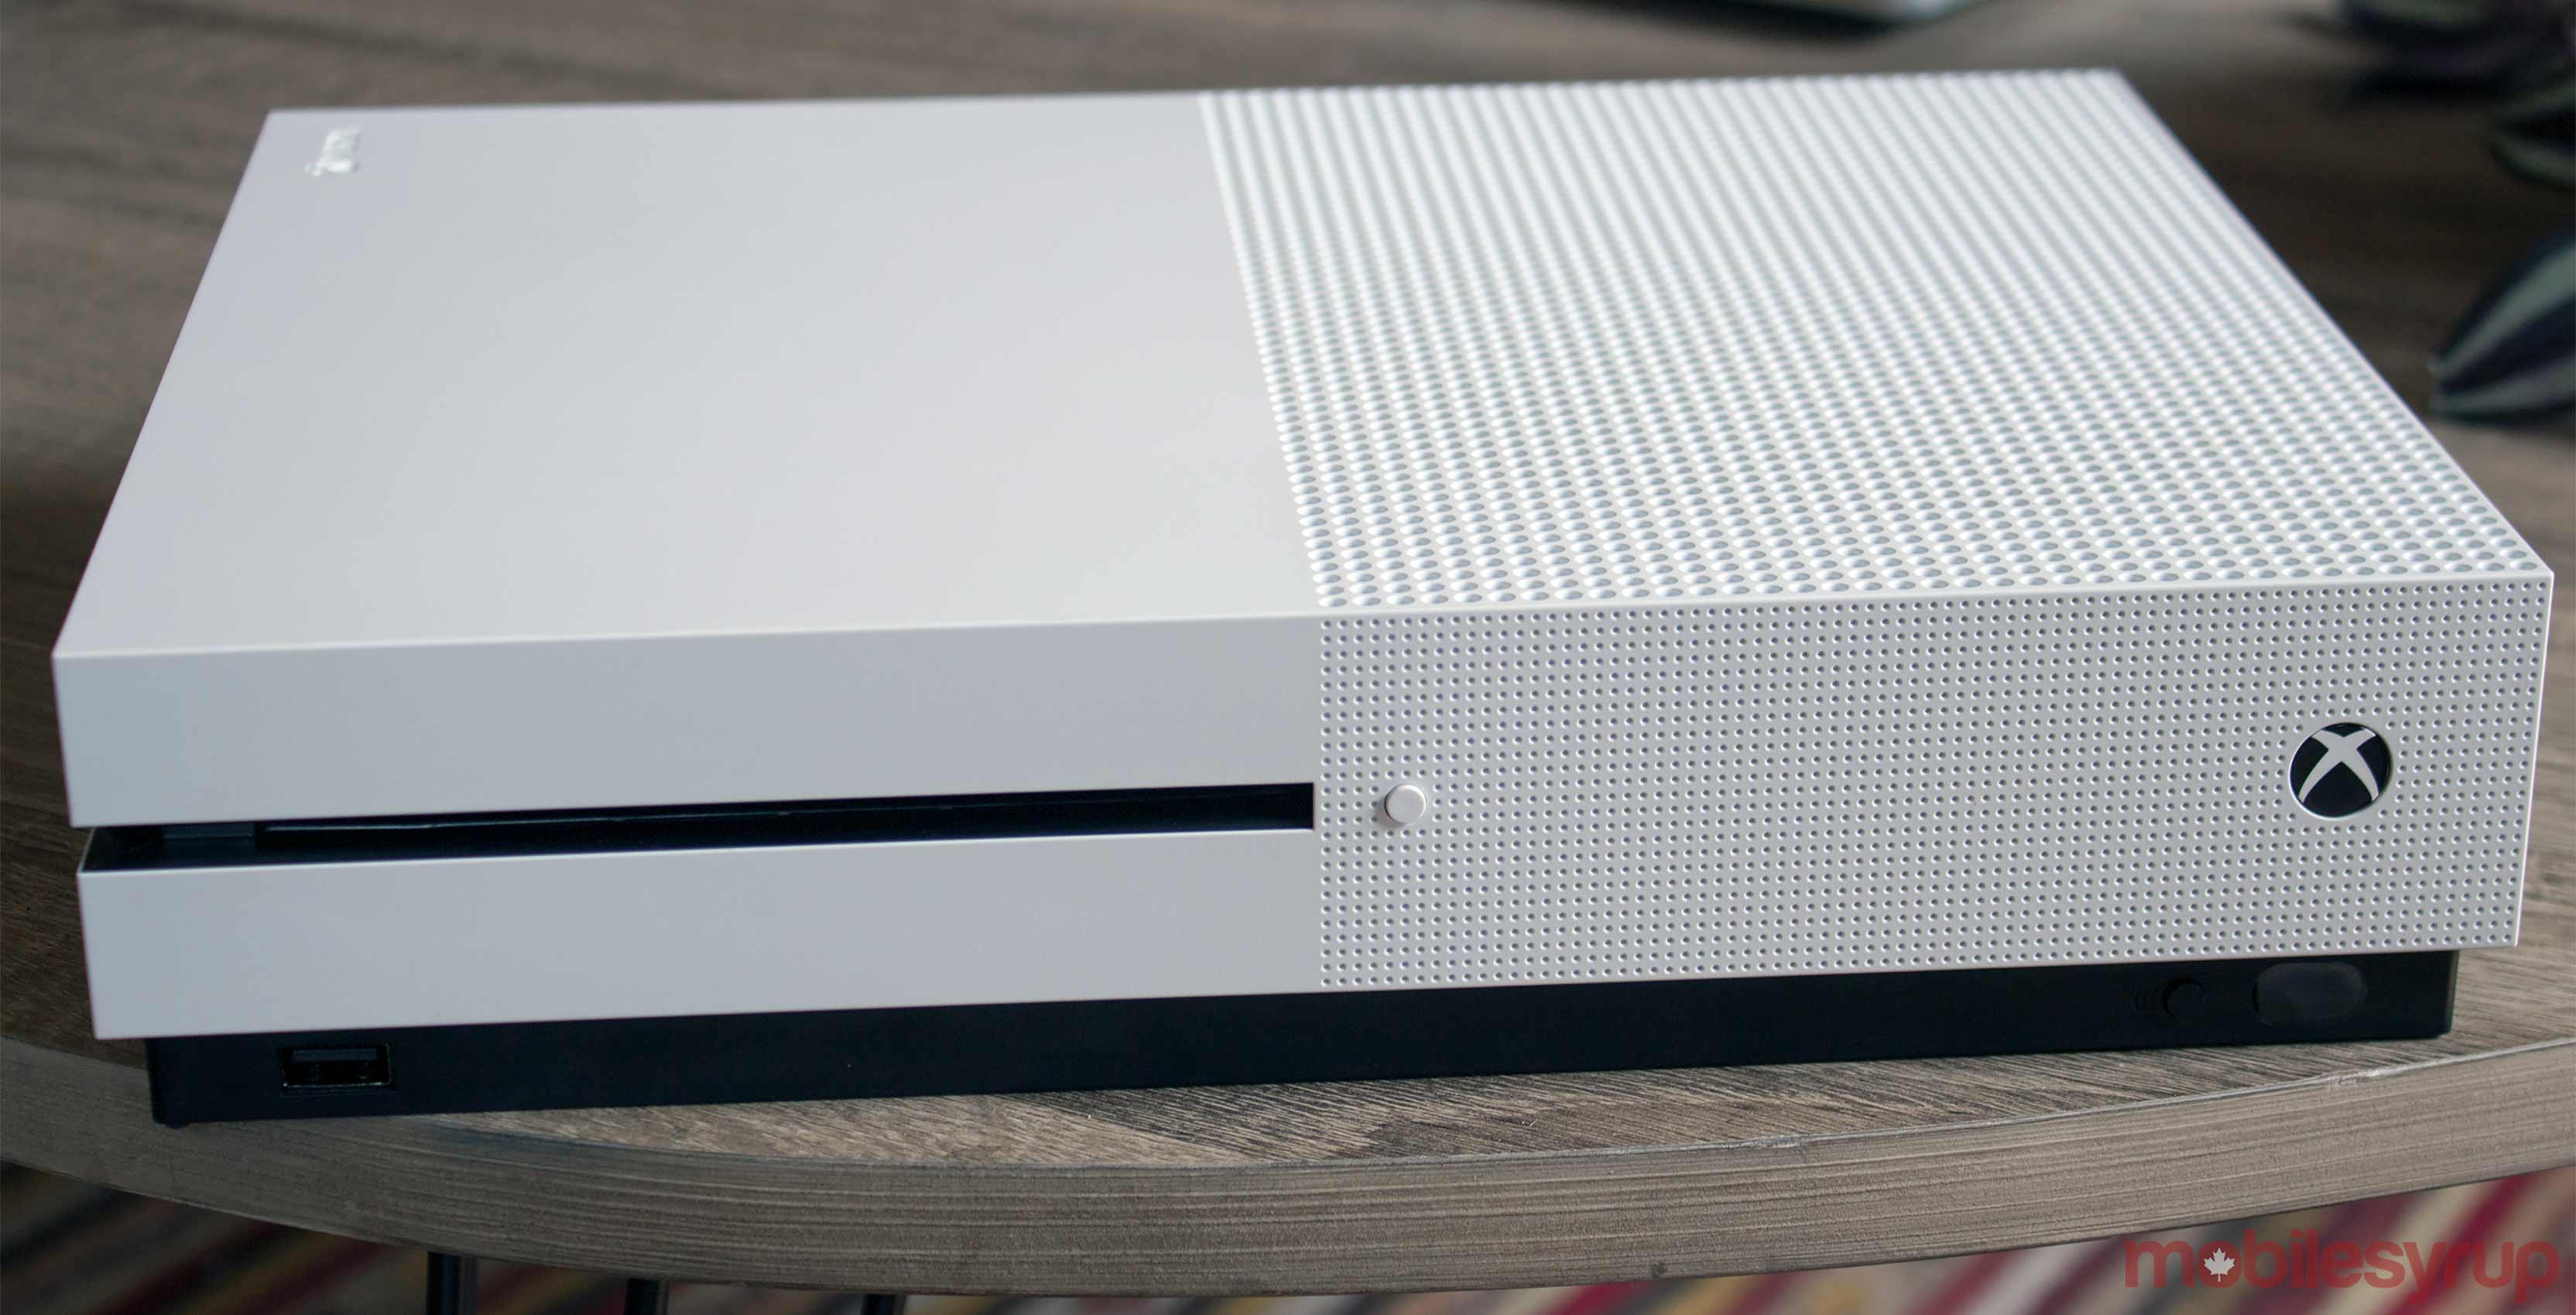 Xbox One S white console